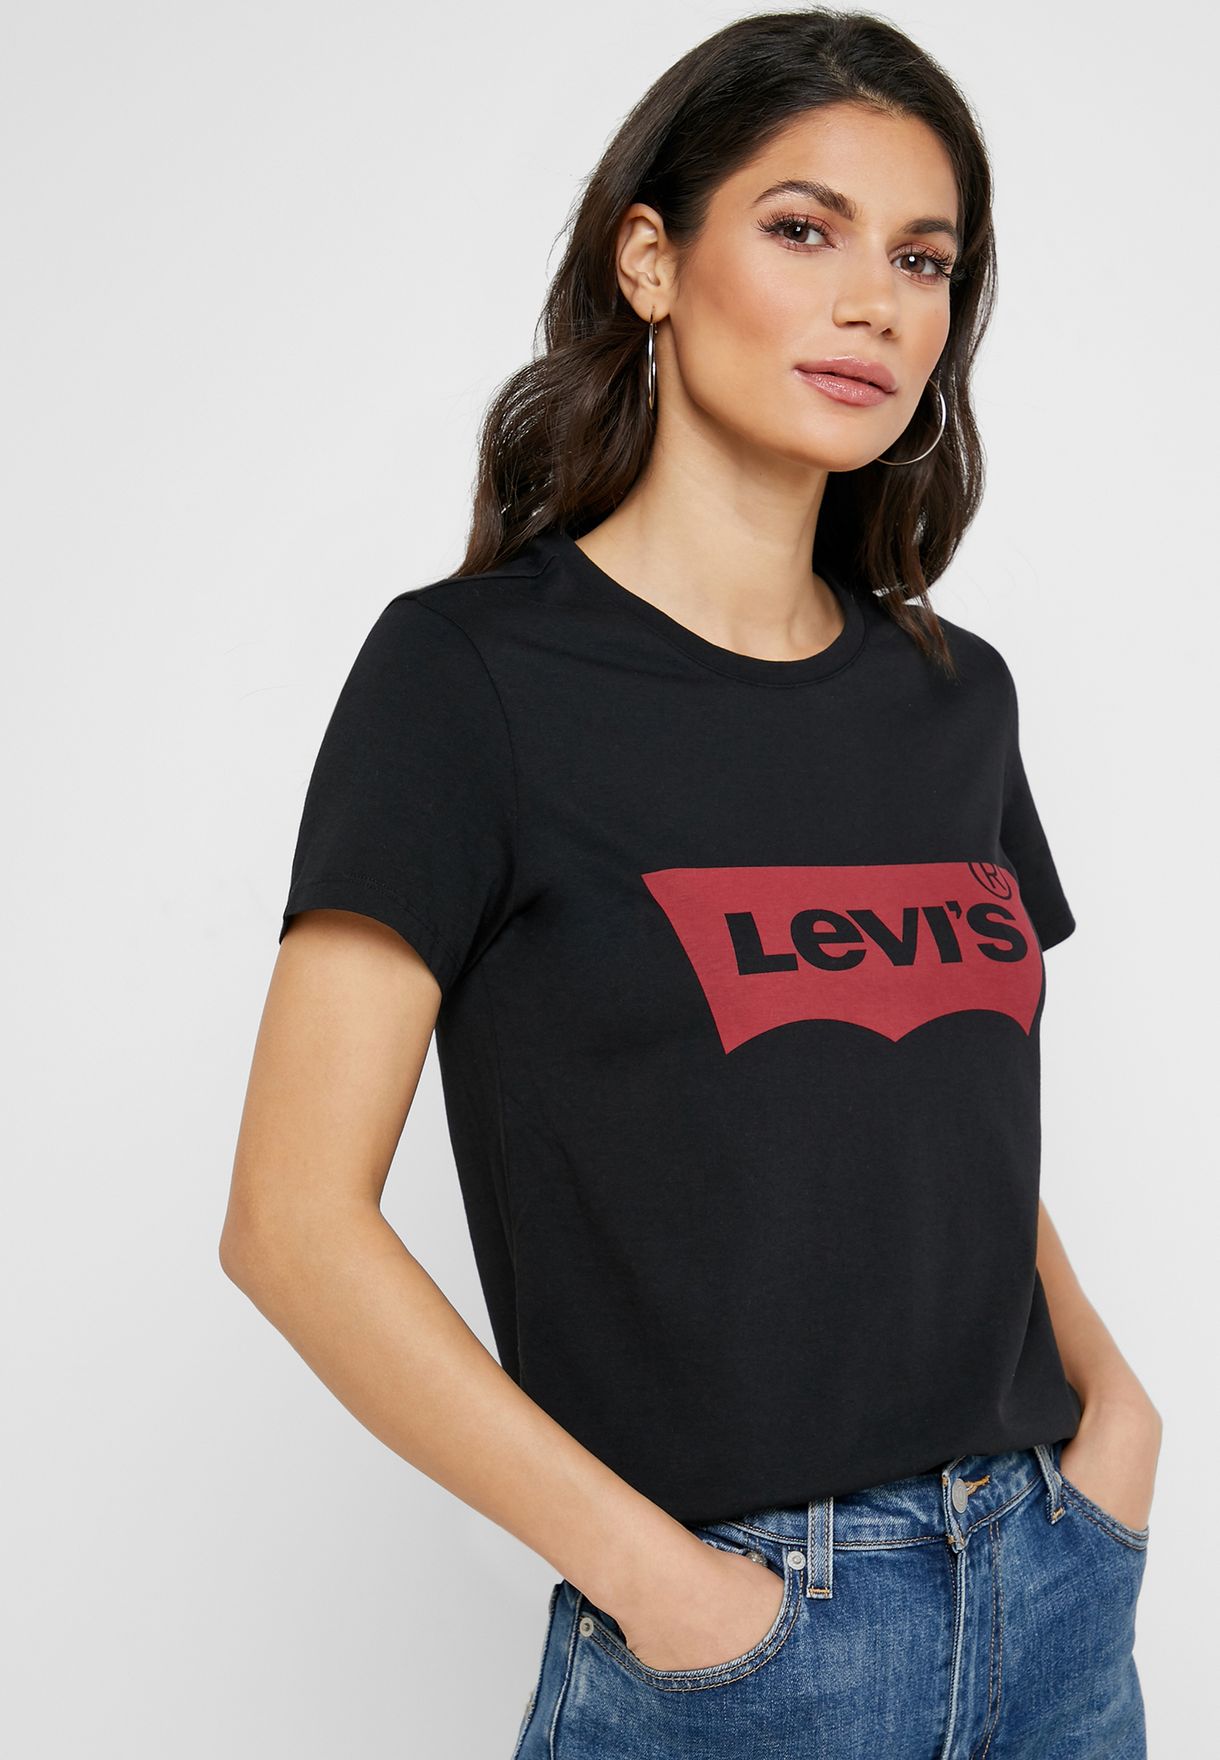 levis t shirt women